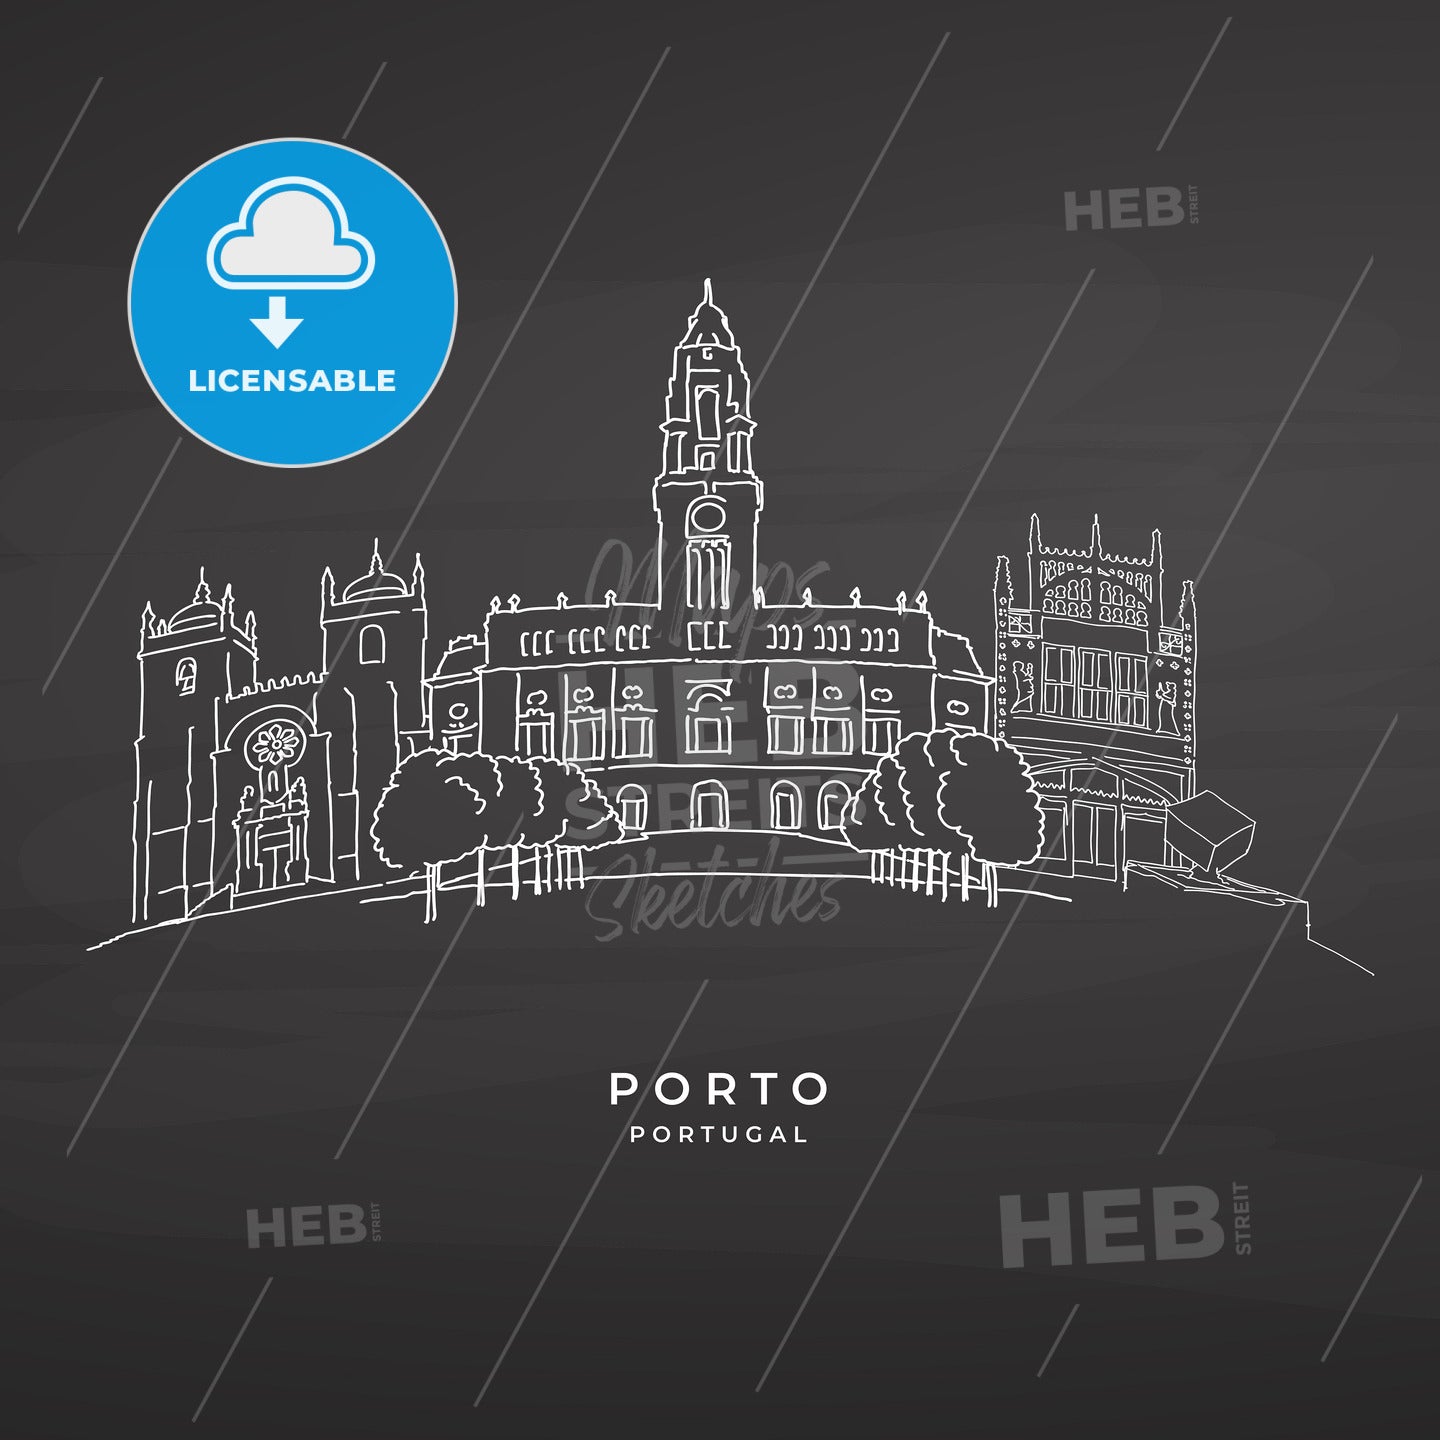 Porto, Portugal famous architecture on blackboard – instant download